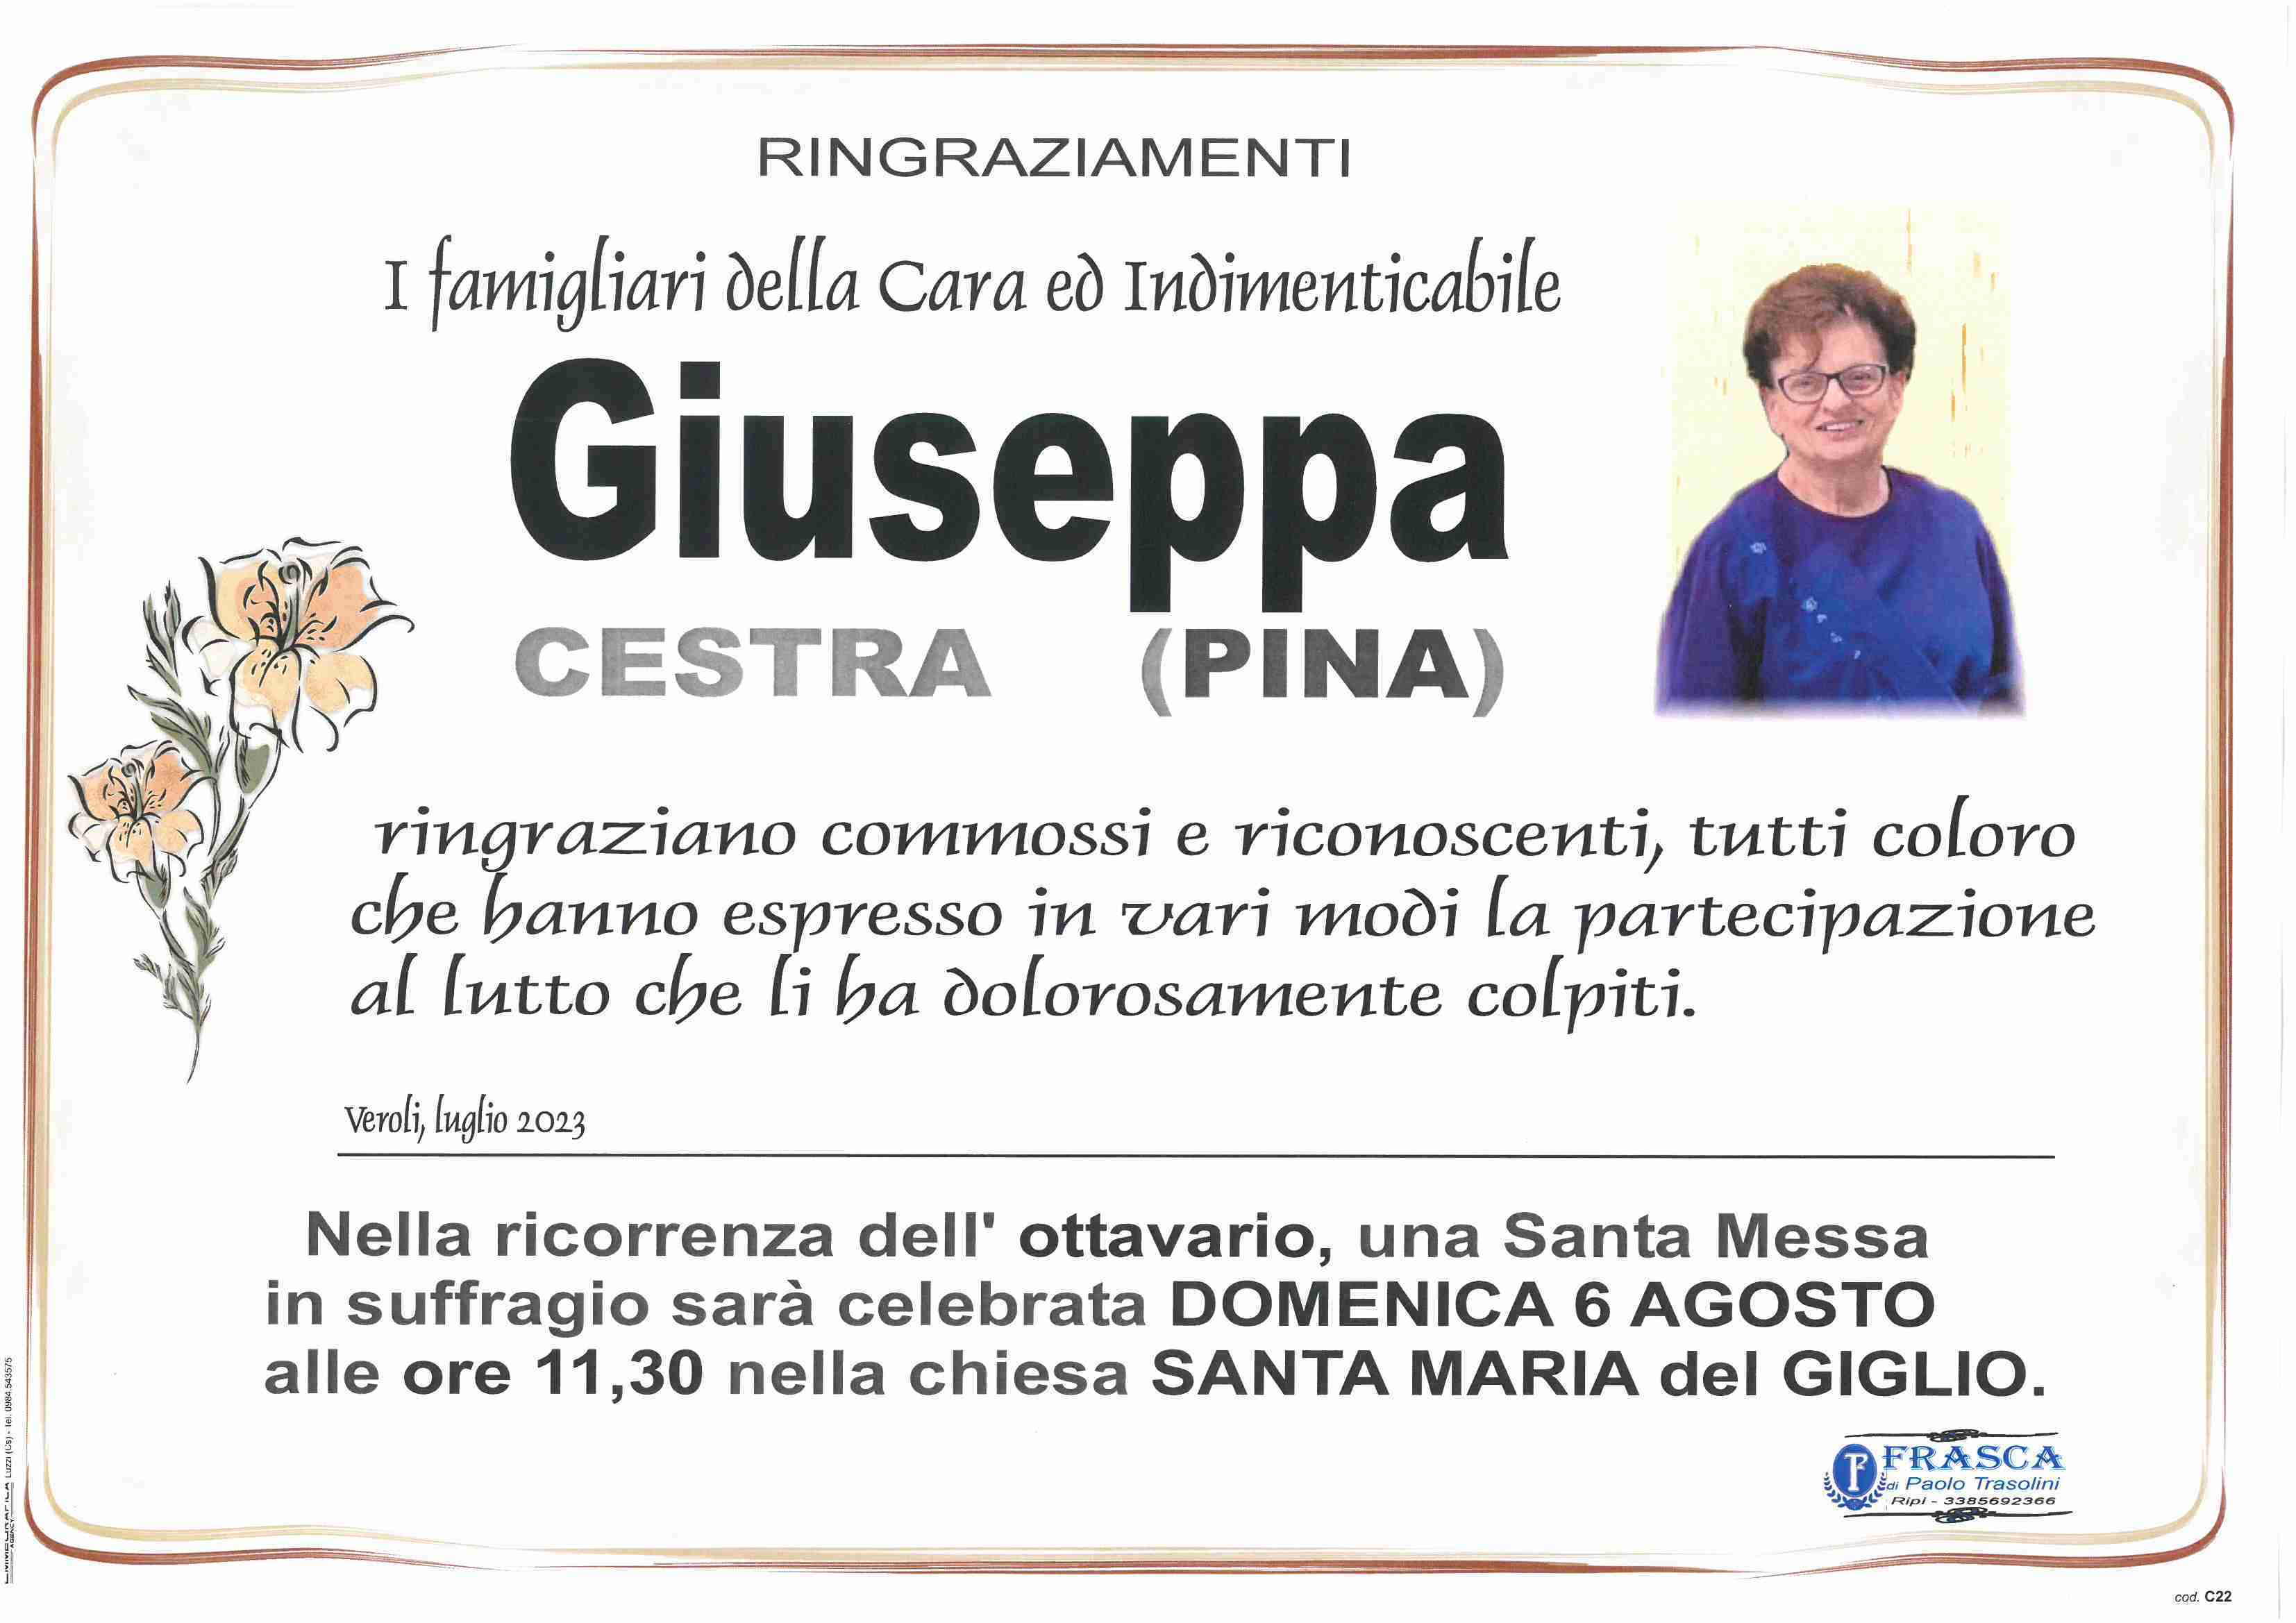 Giuseppa Cestra